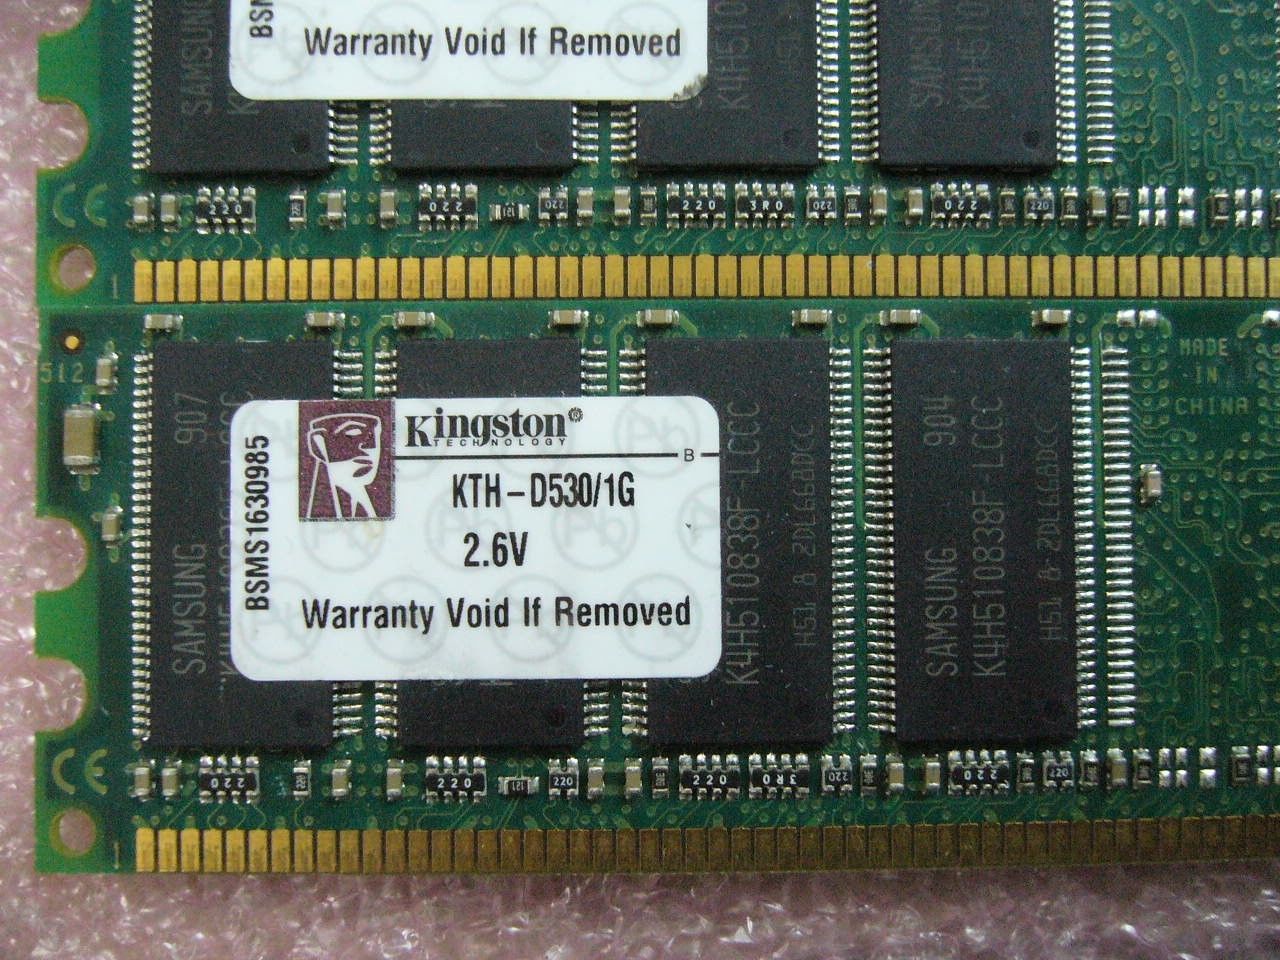 QTY 1x 1GB DDR 400Mhz PC3200 desktop non-ECC memory stick Kingston KTH-D530/1G